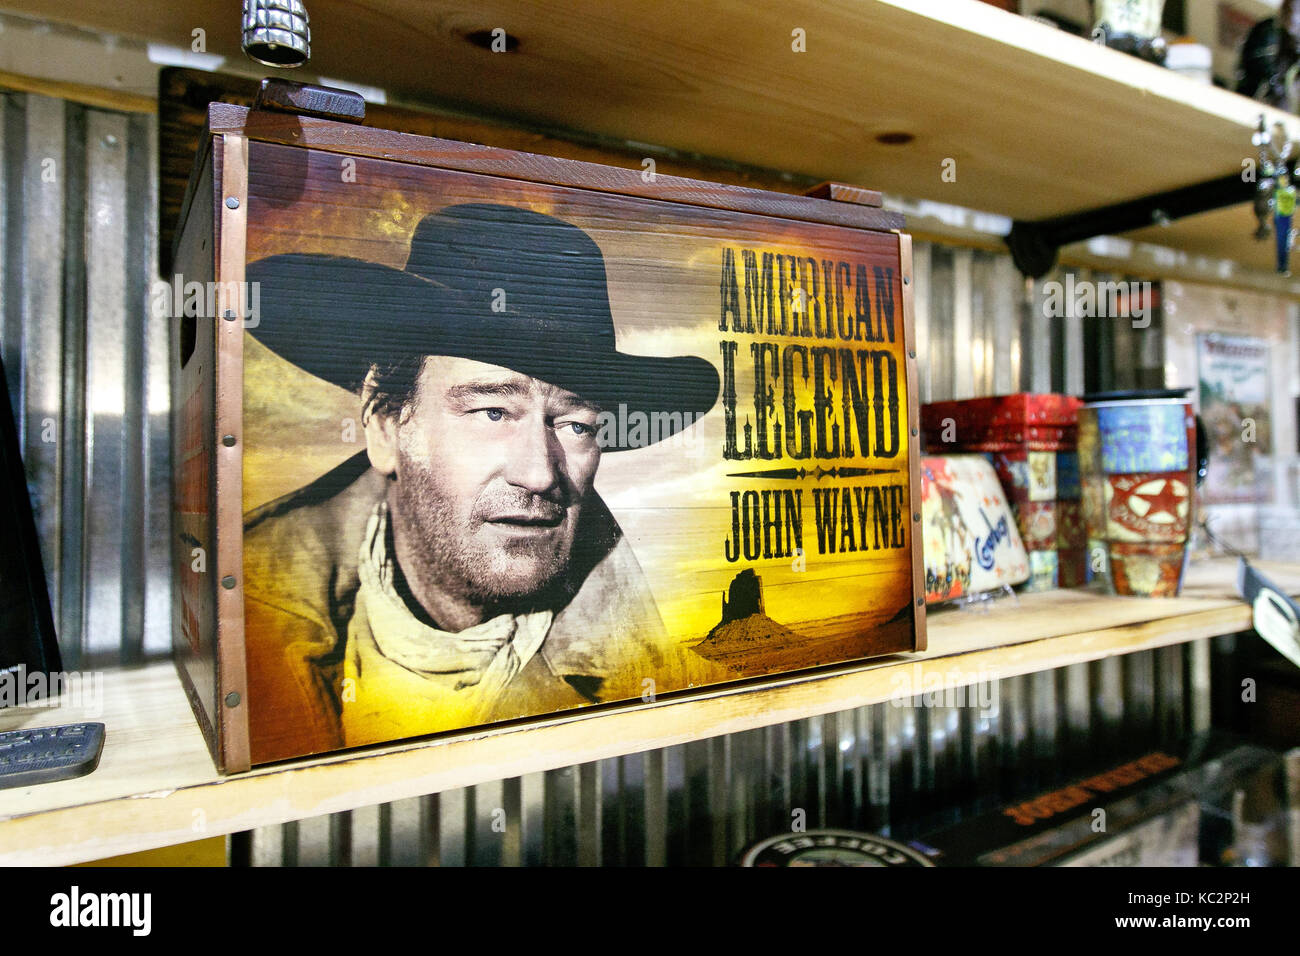 John Wayne à son effigie est affiché sur les étagères d'un magasin à Manhattan. Banque D'Images